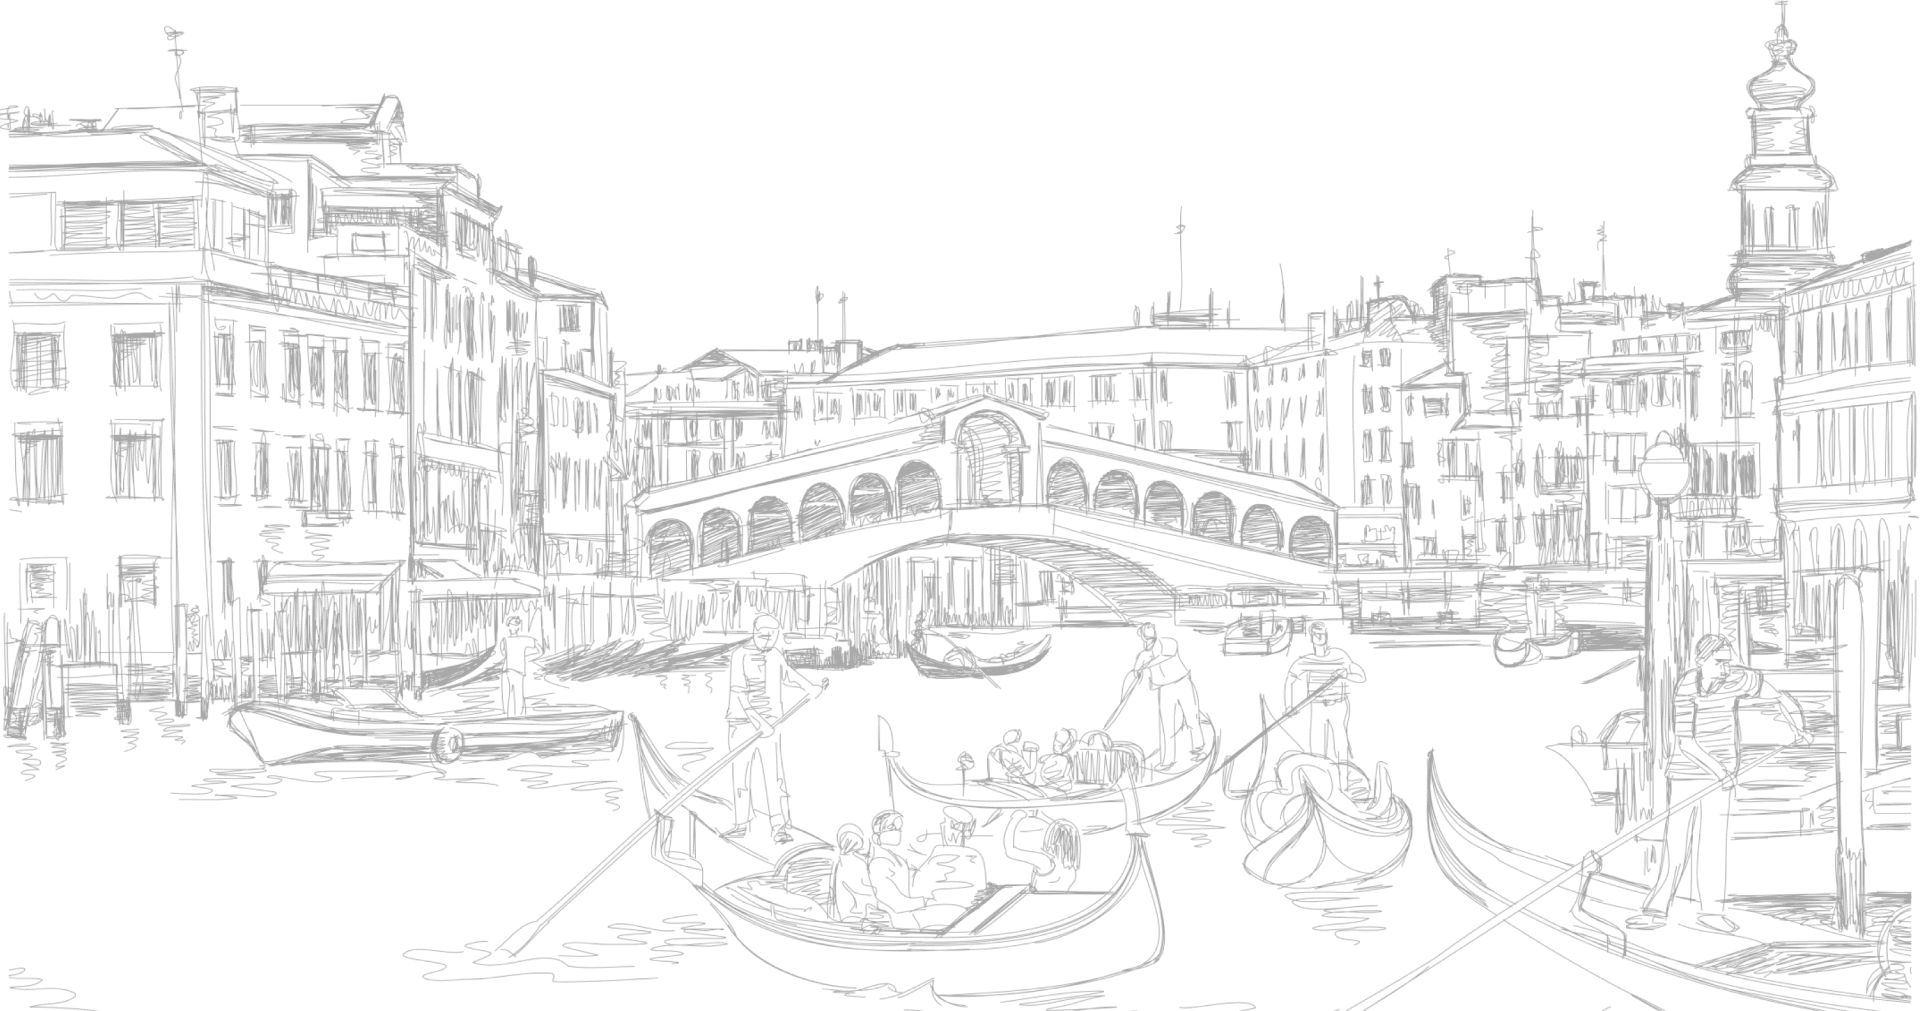 Hãy đến Veneci ngay bây giờ để cảm nhận vẻ đẹp đầy lãng mạn của thành phố trôi nổi này. Nơi đây sẽ đem lại những trải nghiệm tuyệt vời cho bạn về cảm giác, màu sắc và âm thanh.